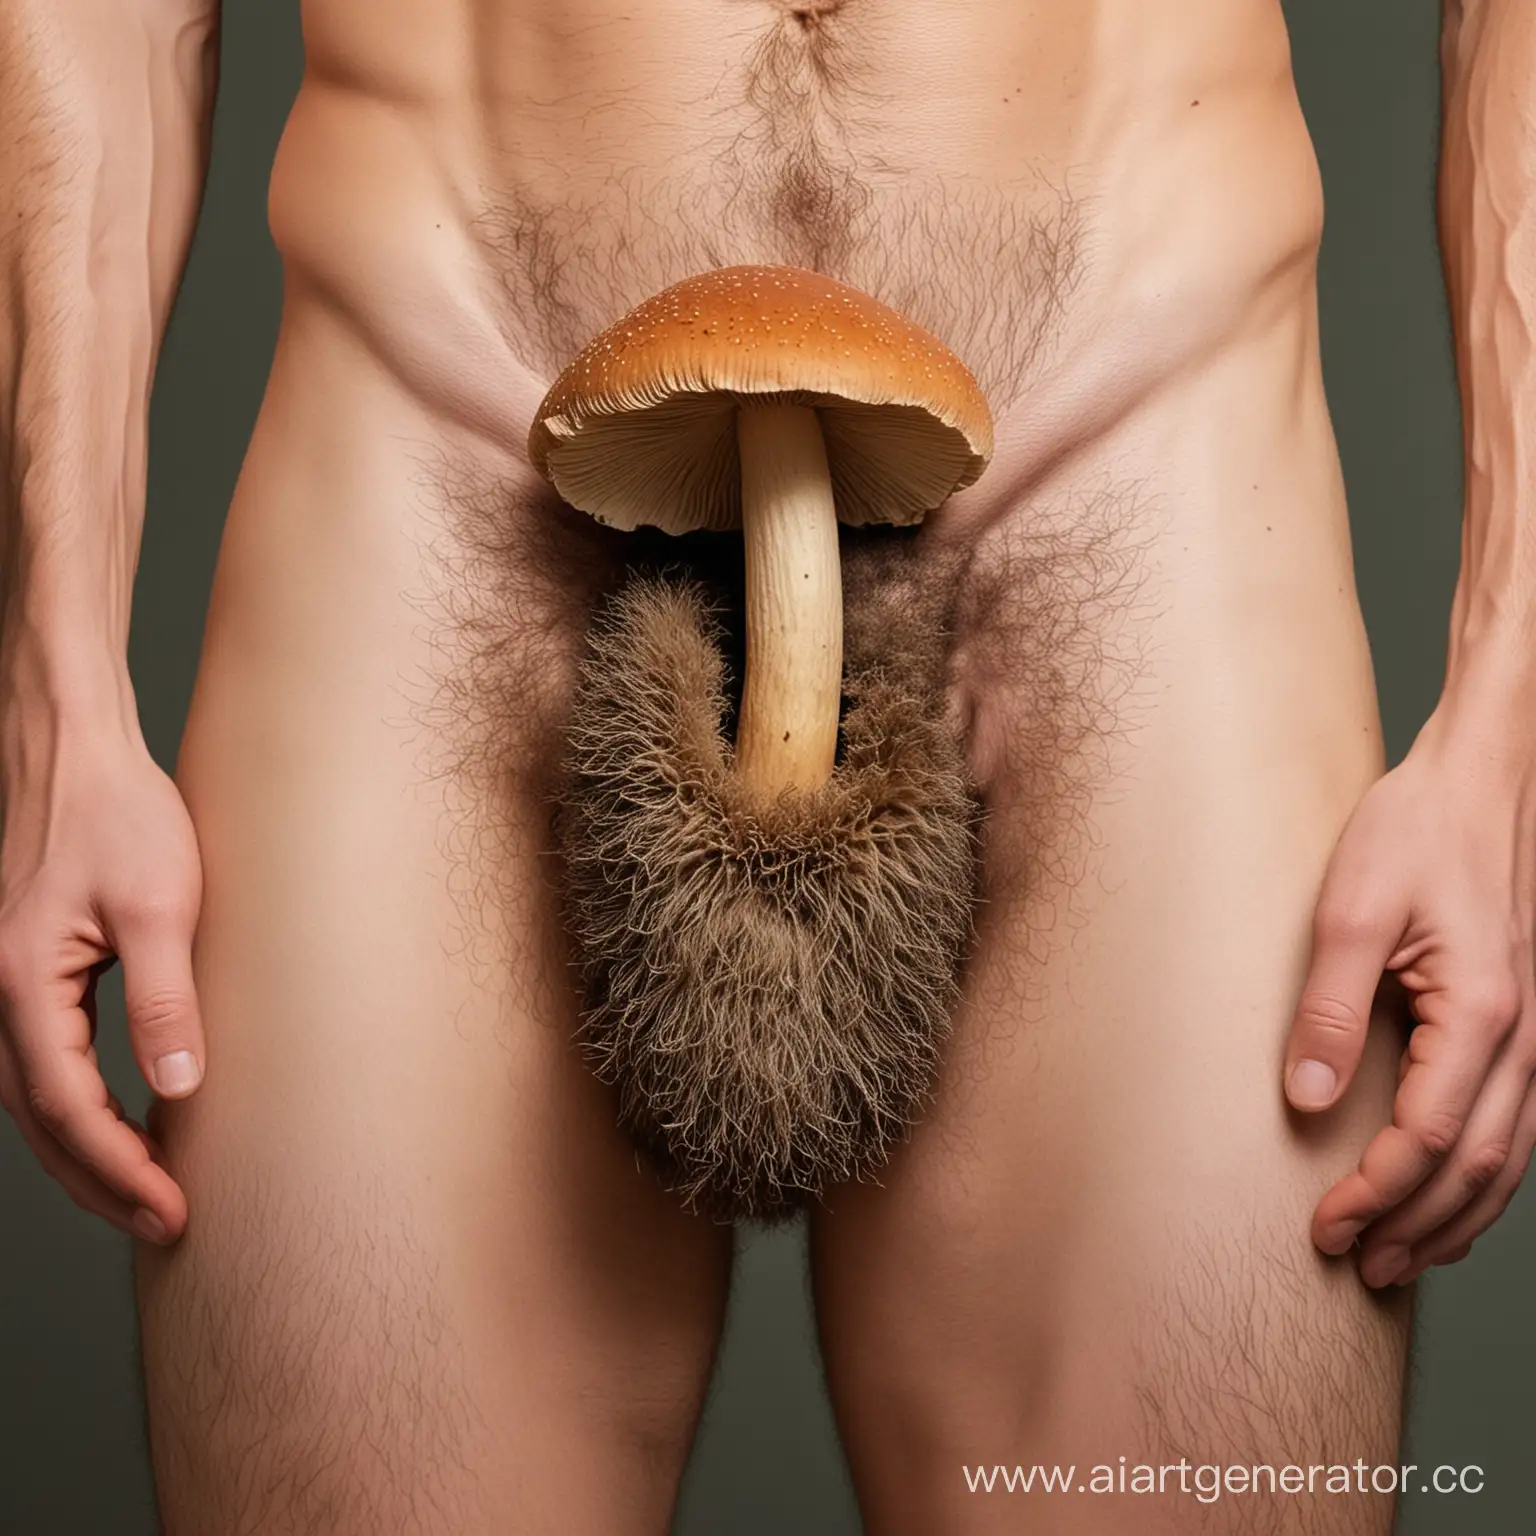 голый мужчина с большим волосатым пенисом, а на его лобке растет гриб